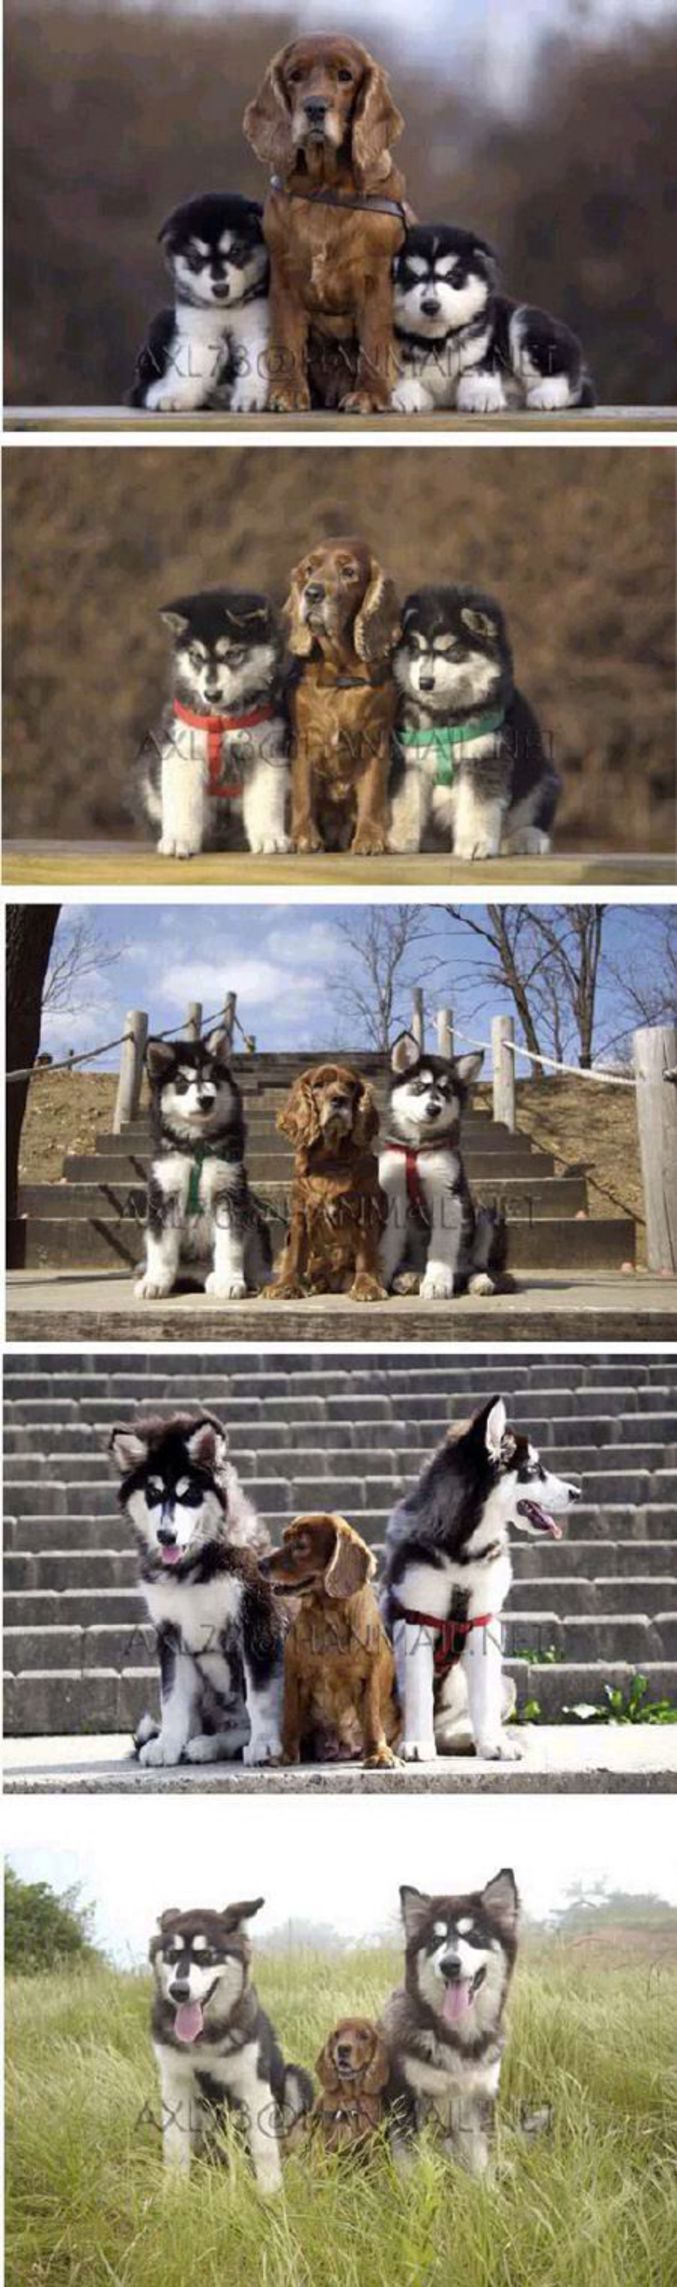 L'évolution de 3 chiens élevés ensemble.